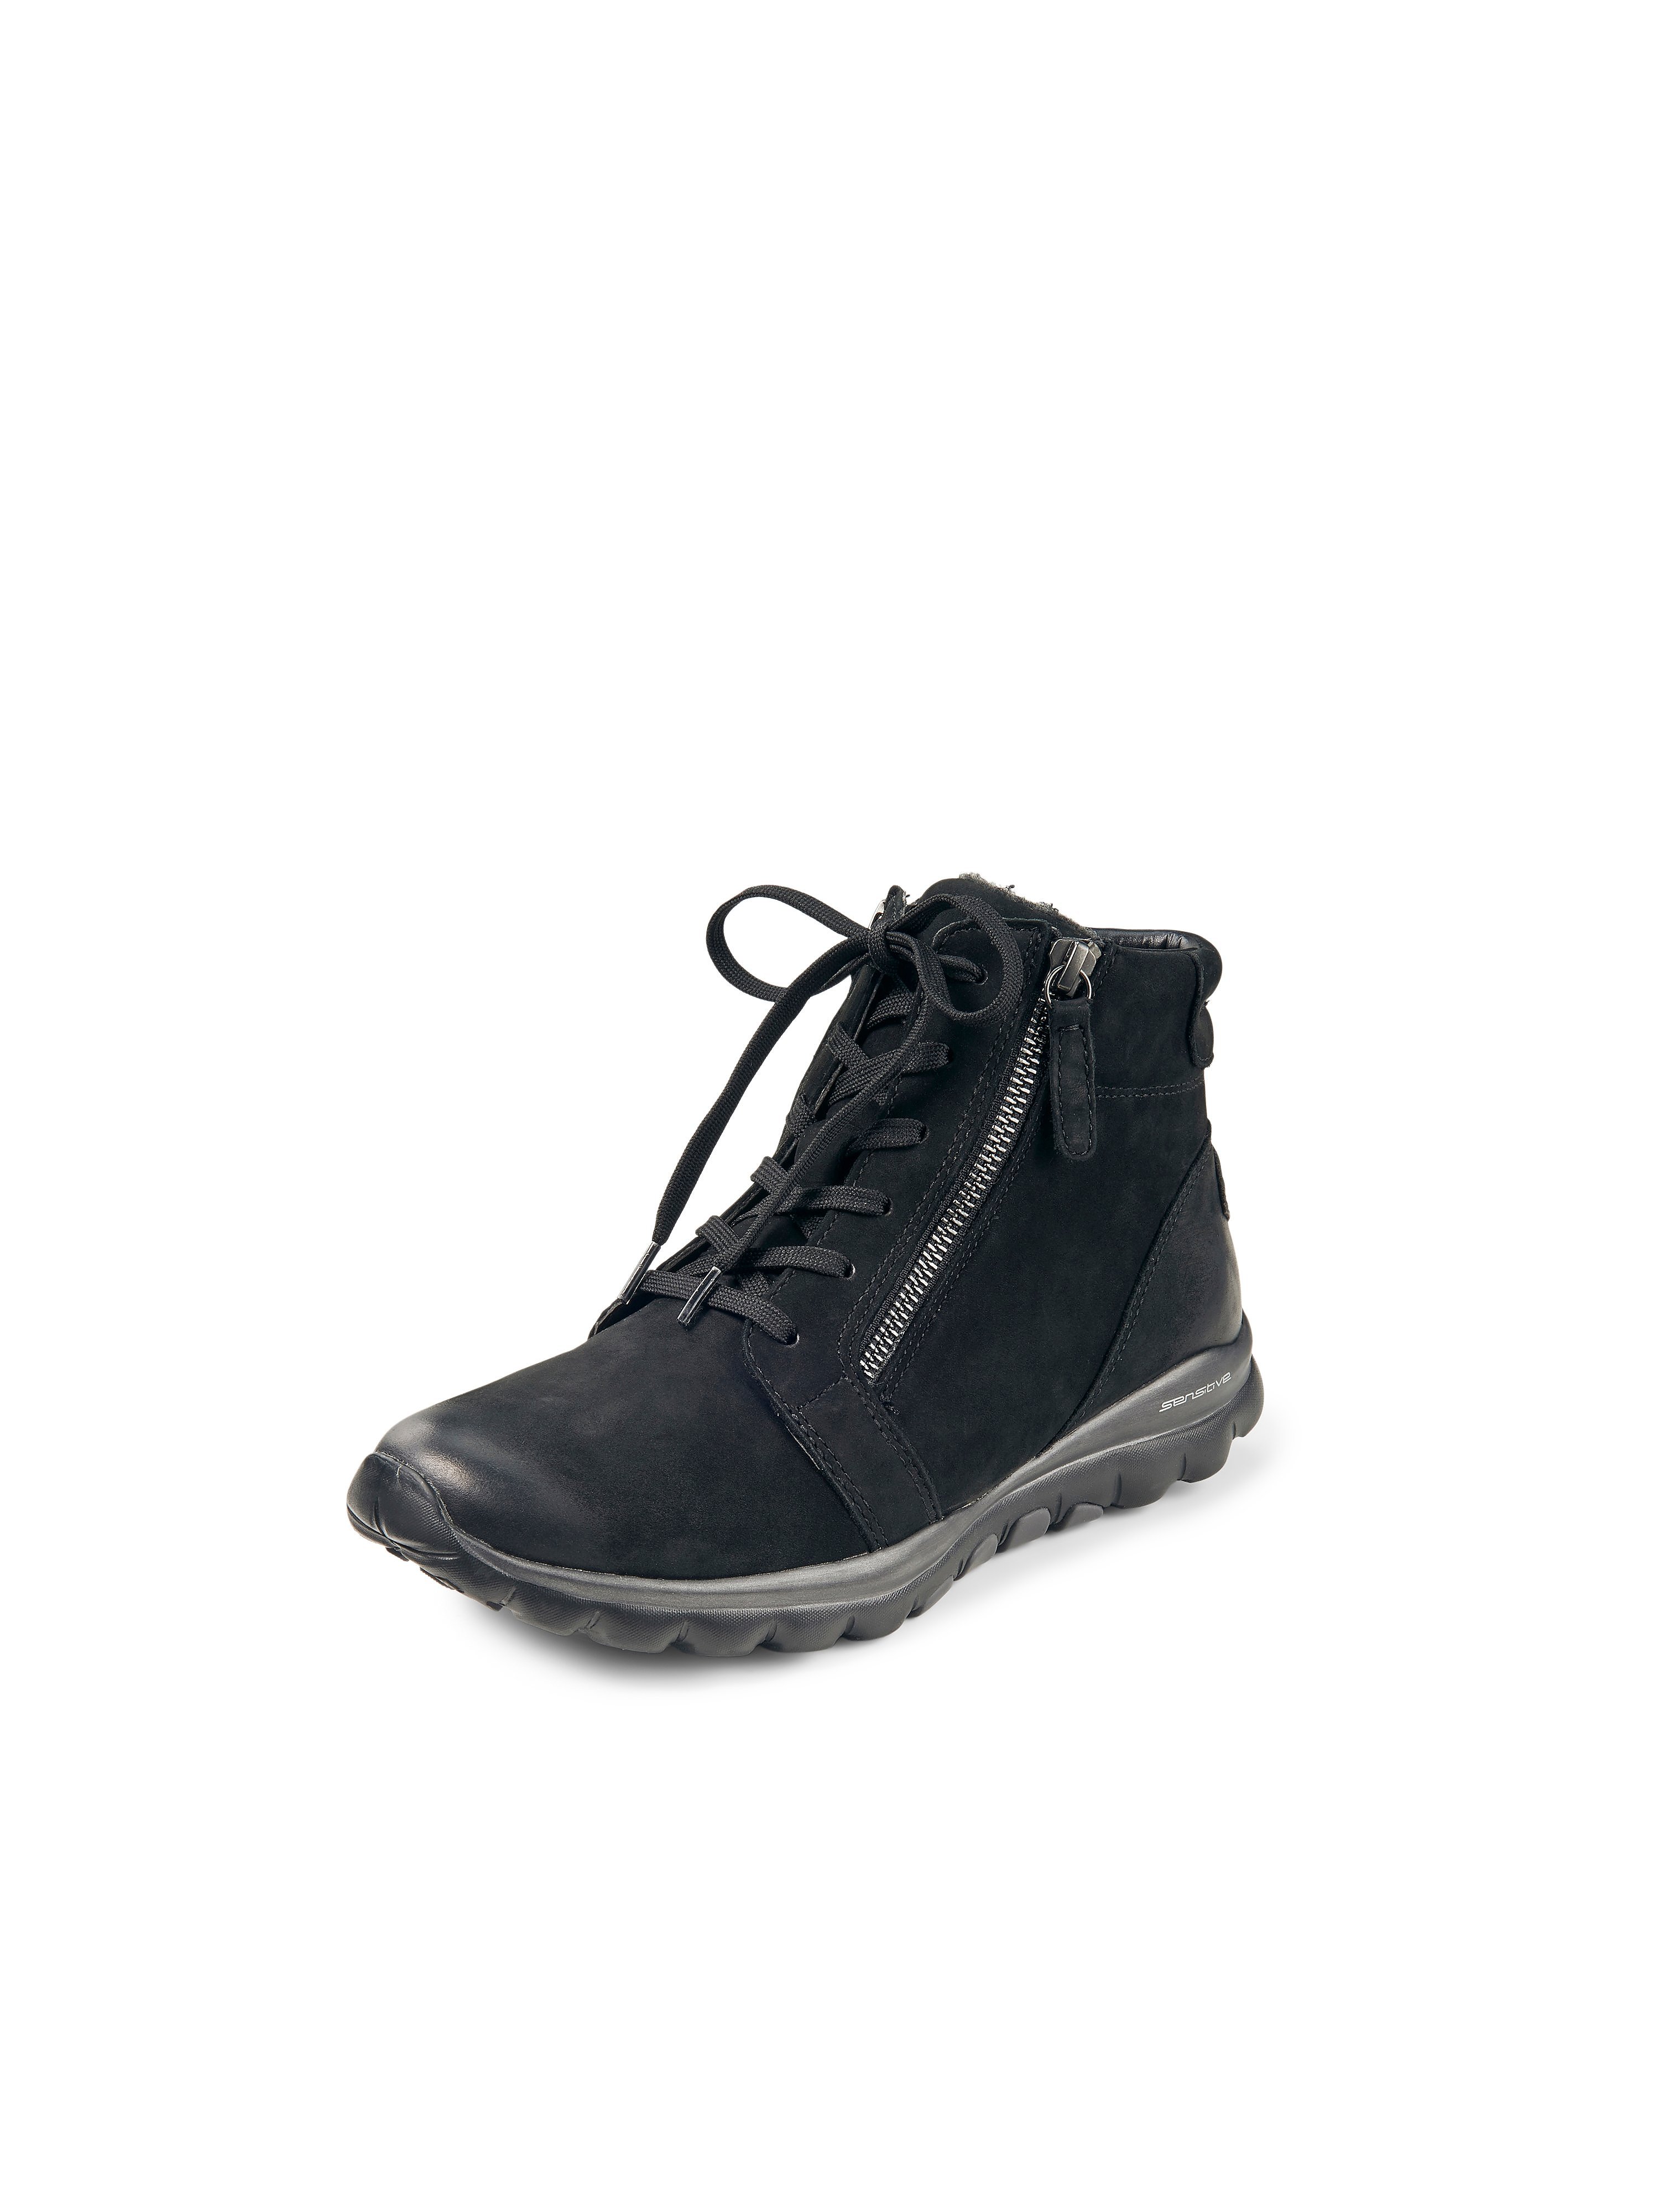 Les chaussures randonnée avec zips pratiques  Rollingsoft noir taille 40